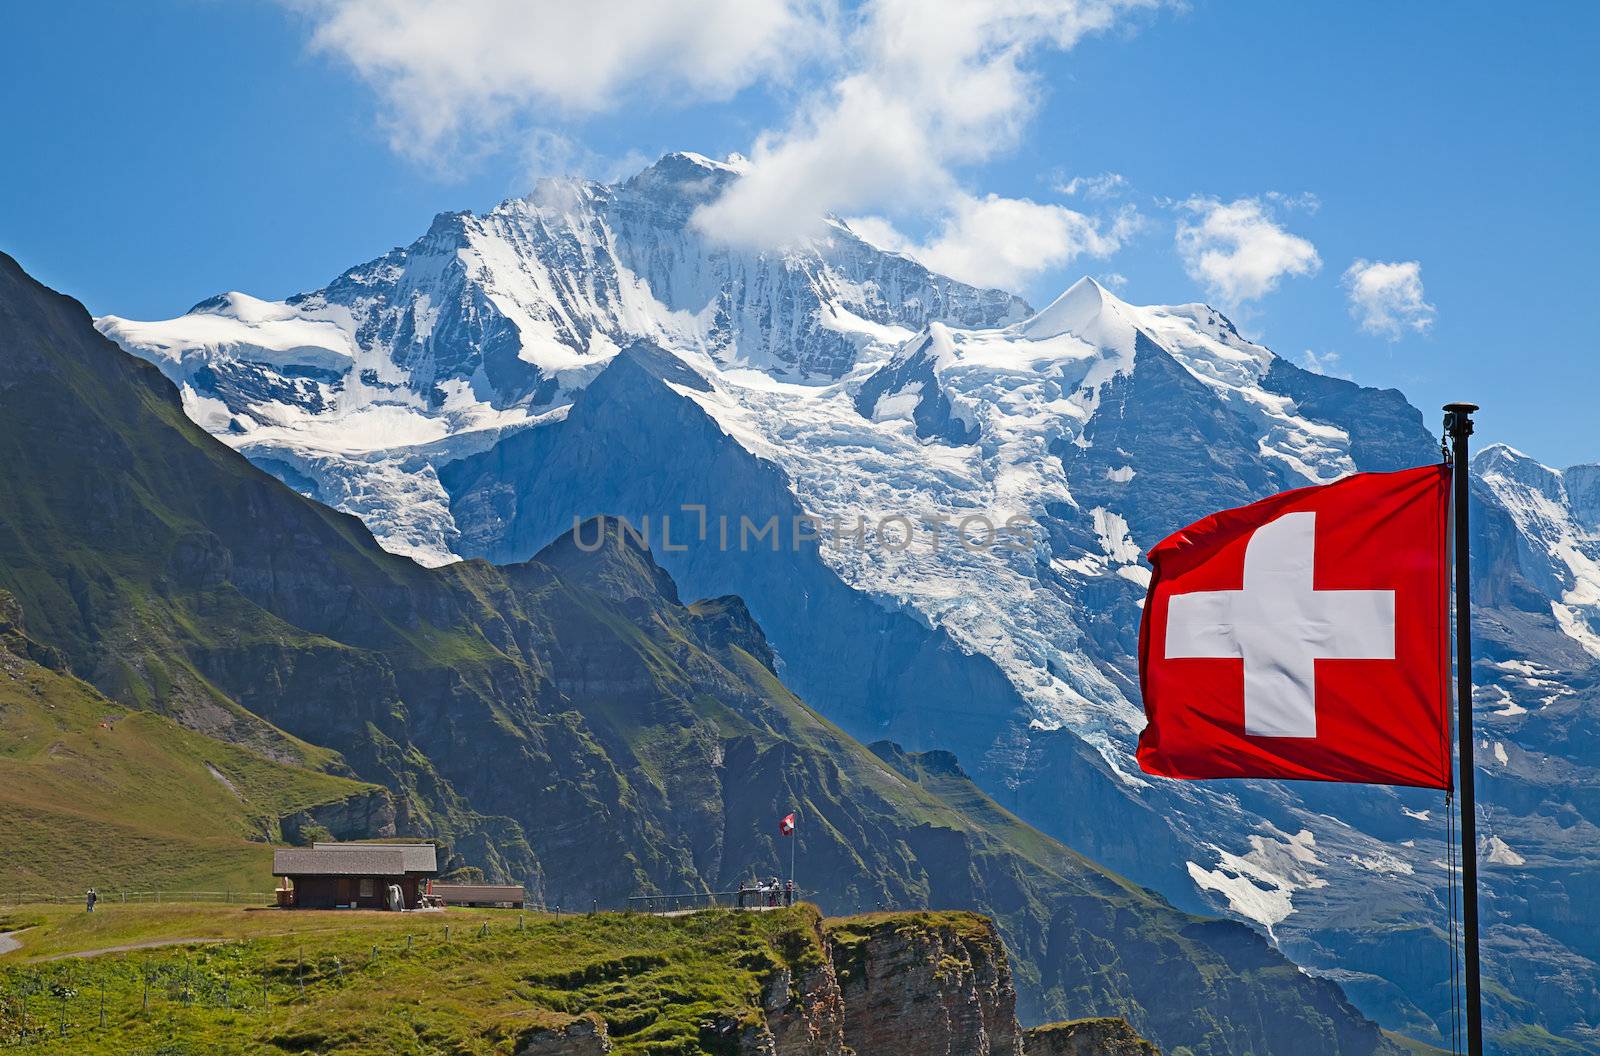 Jungfrau mount by swisshippo